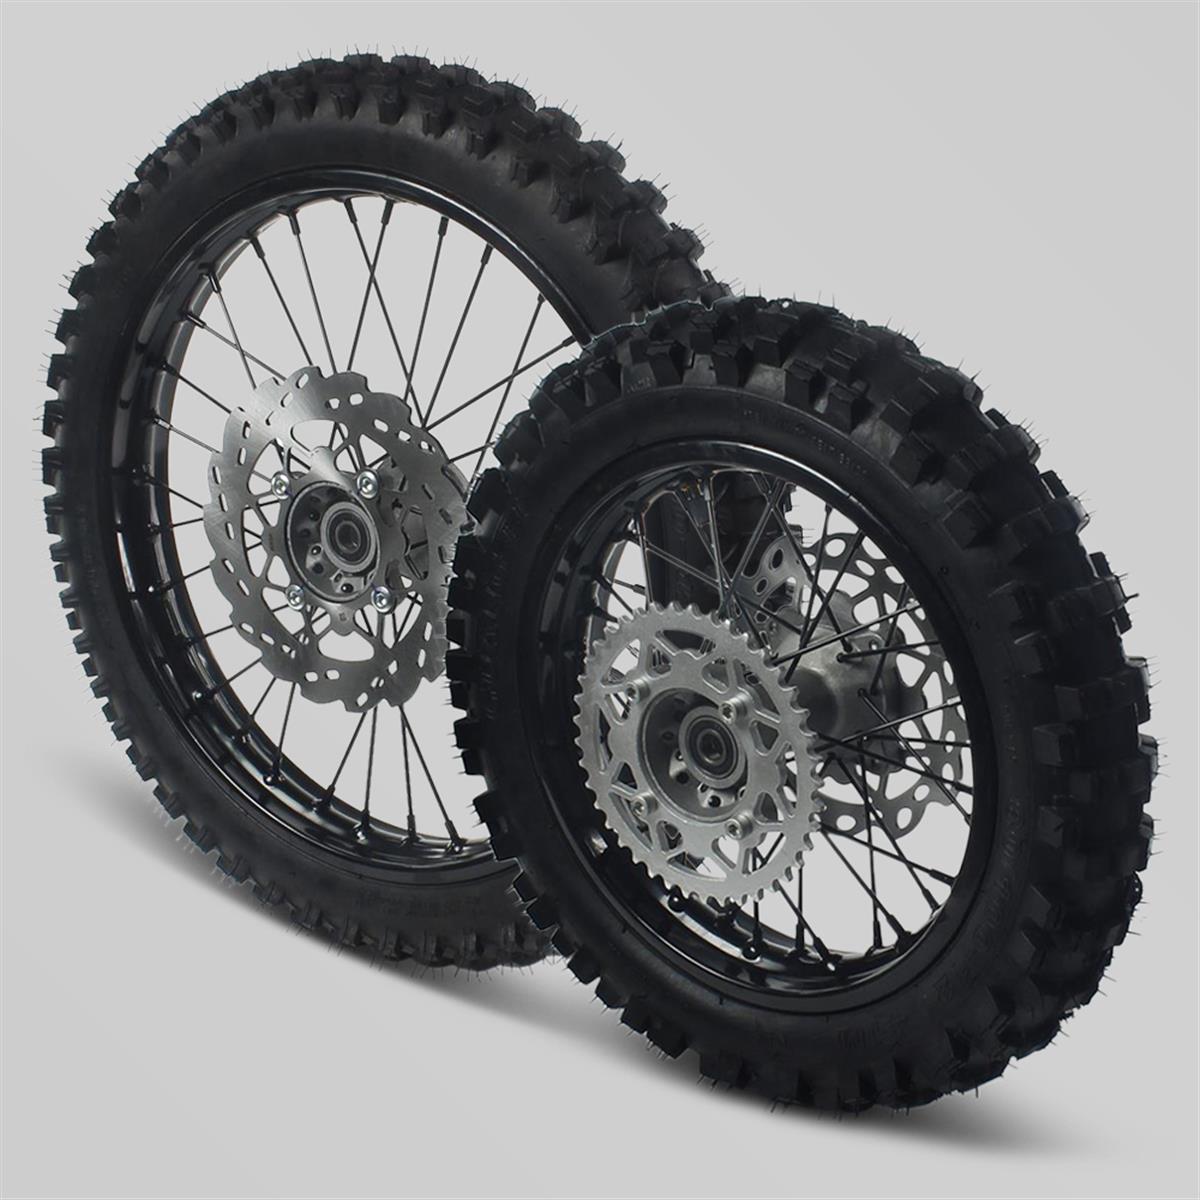 Pack de roues 16/19 pour Dirt bike, Pit Bike Apollo RXF Freeride | Smallmx  - Dirt bike, Pit bike, Quads, Minimoto